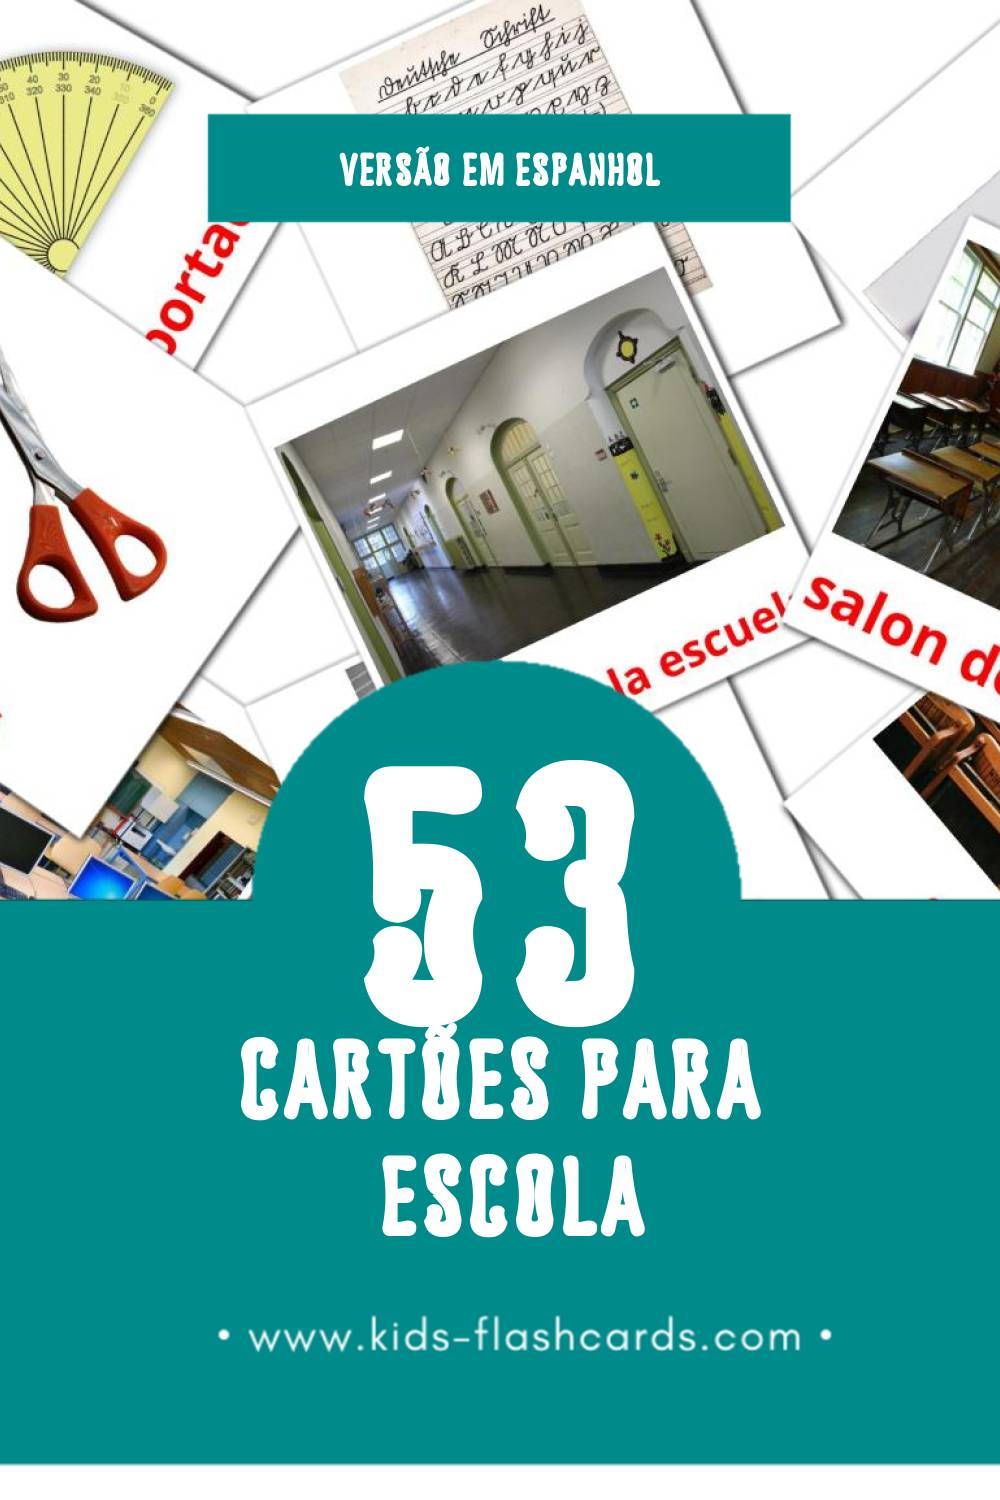 Flashcards de Escuela Visuais para Toddlers (53 cartões em Espanhol)